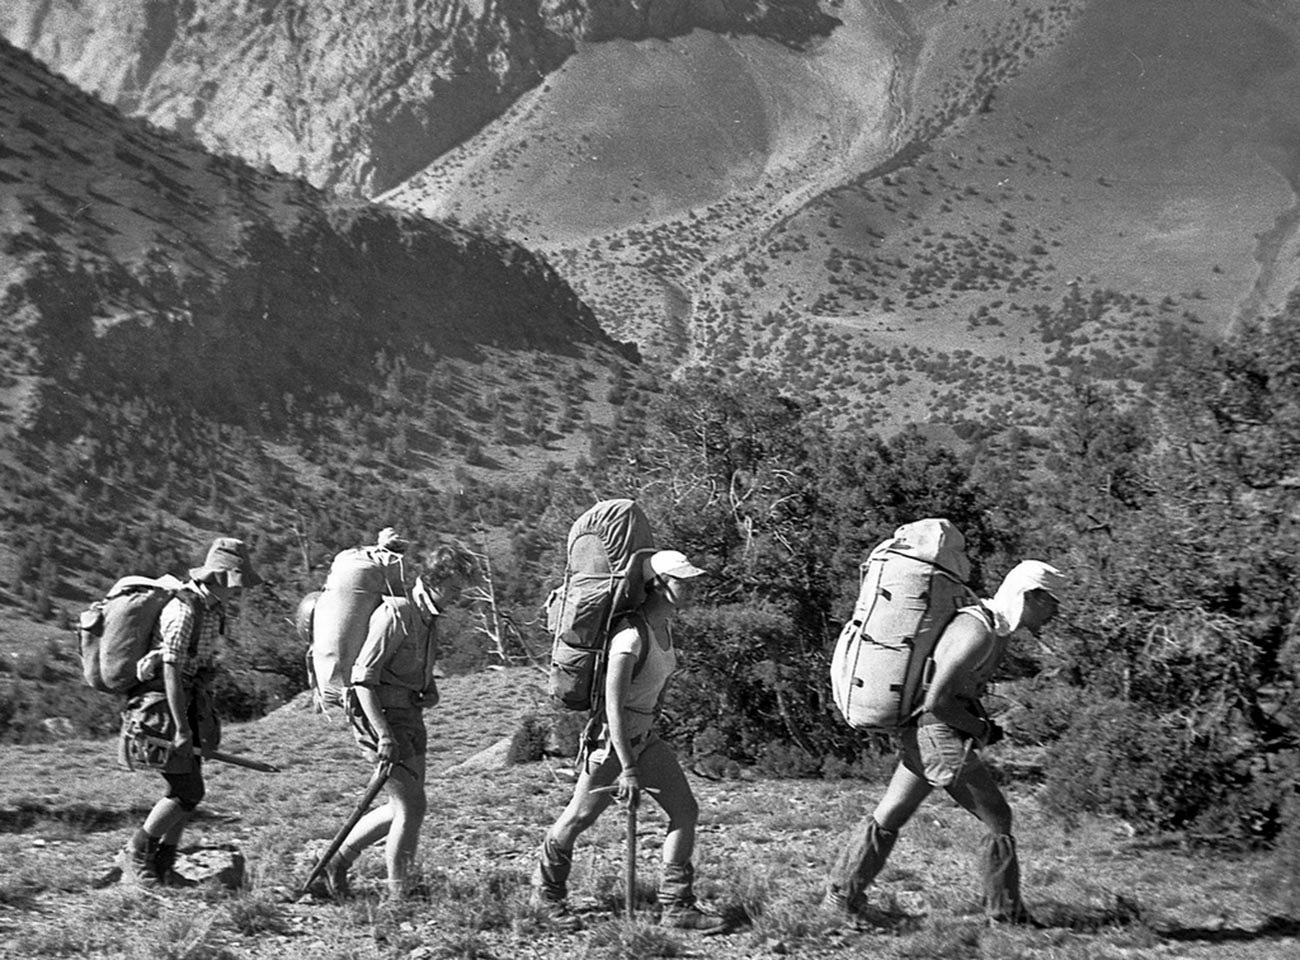 Les alpinistes et randonneurs soviétiques se sont rués pour conquérir les sommets du massif de Pamir.
